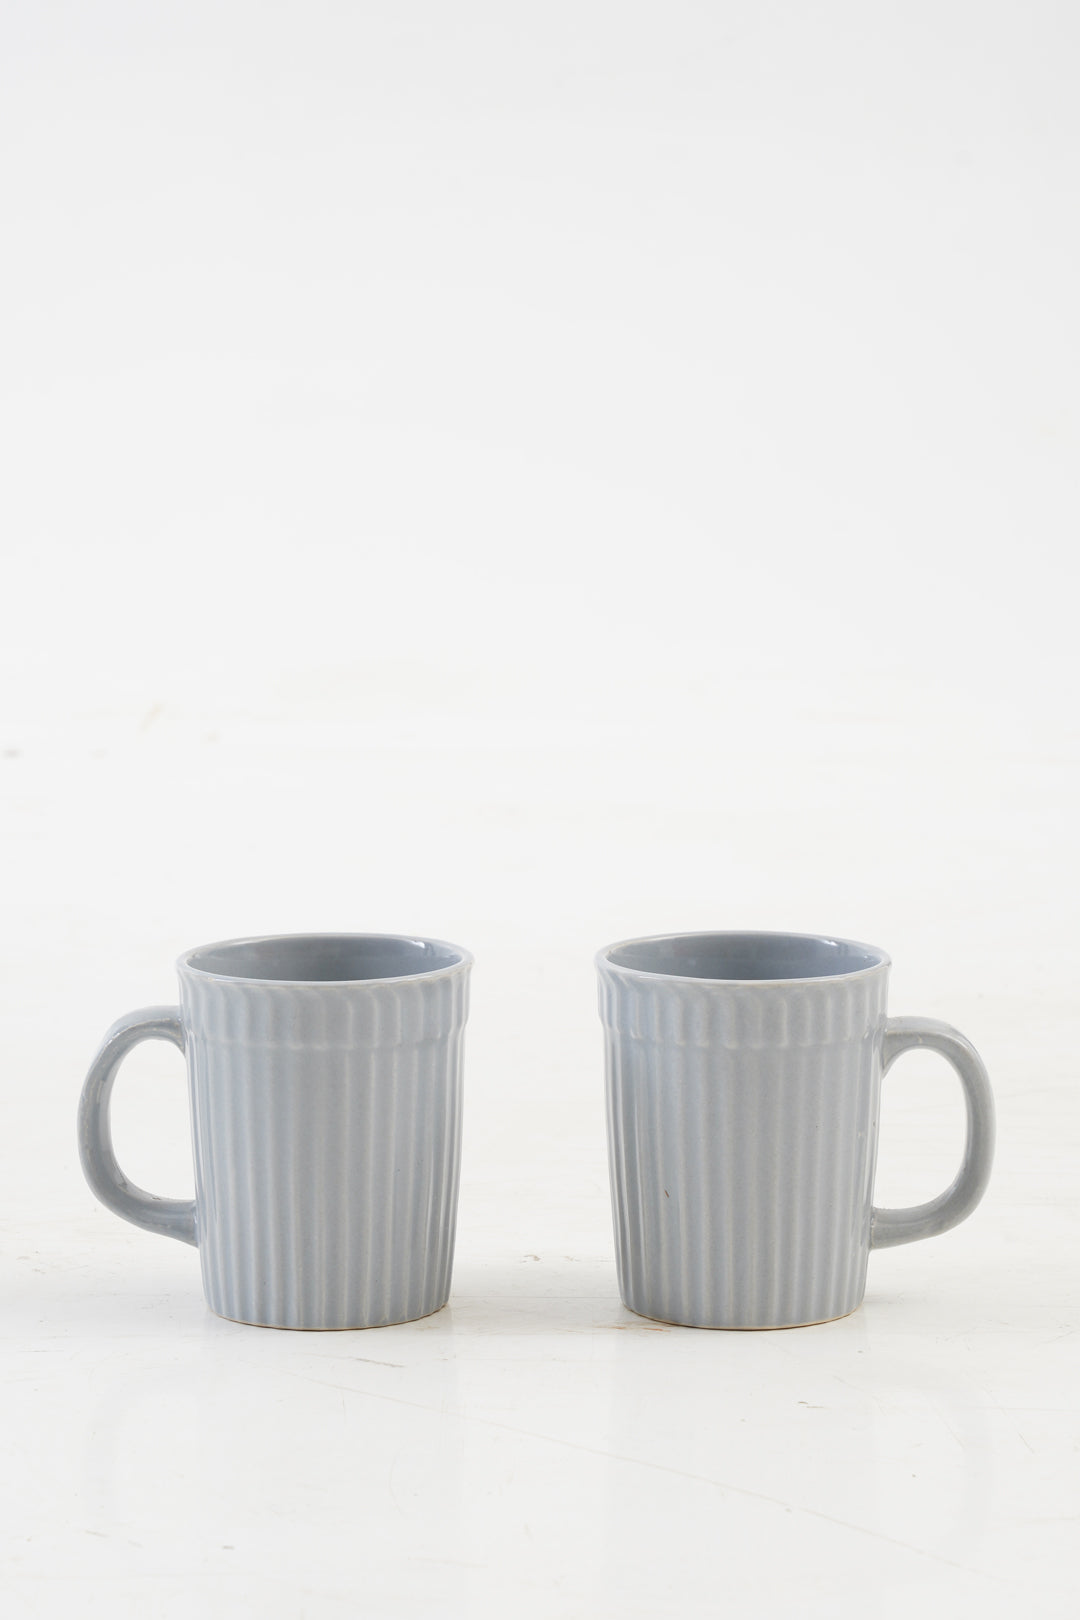 Liny Sky Blue Coffee Mugs set of 2